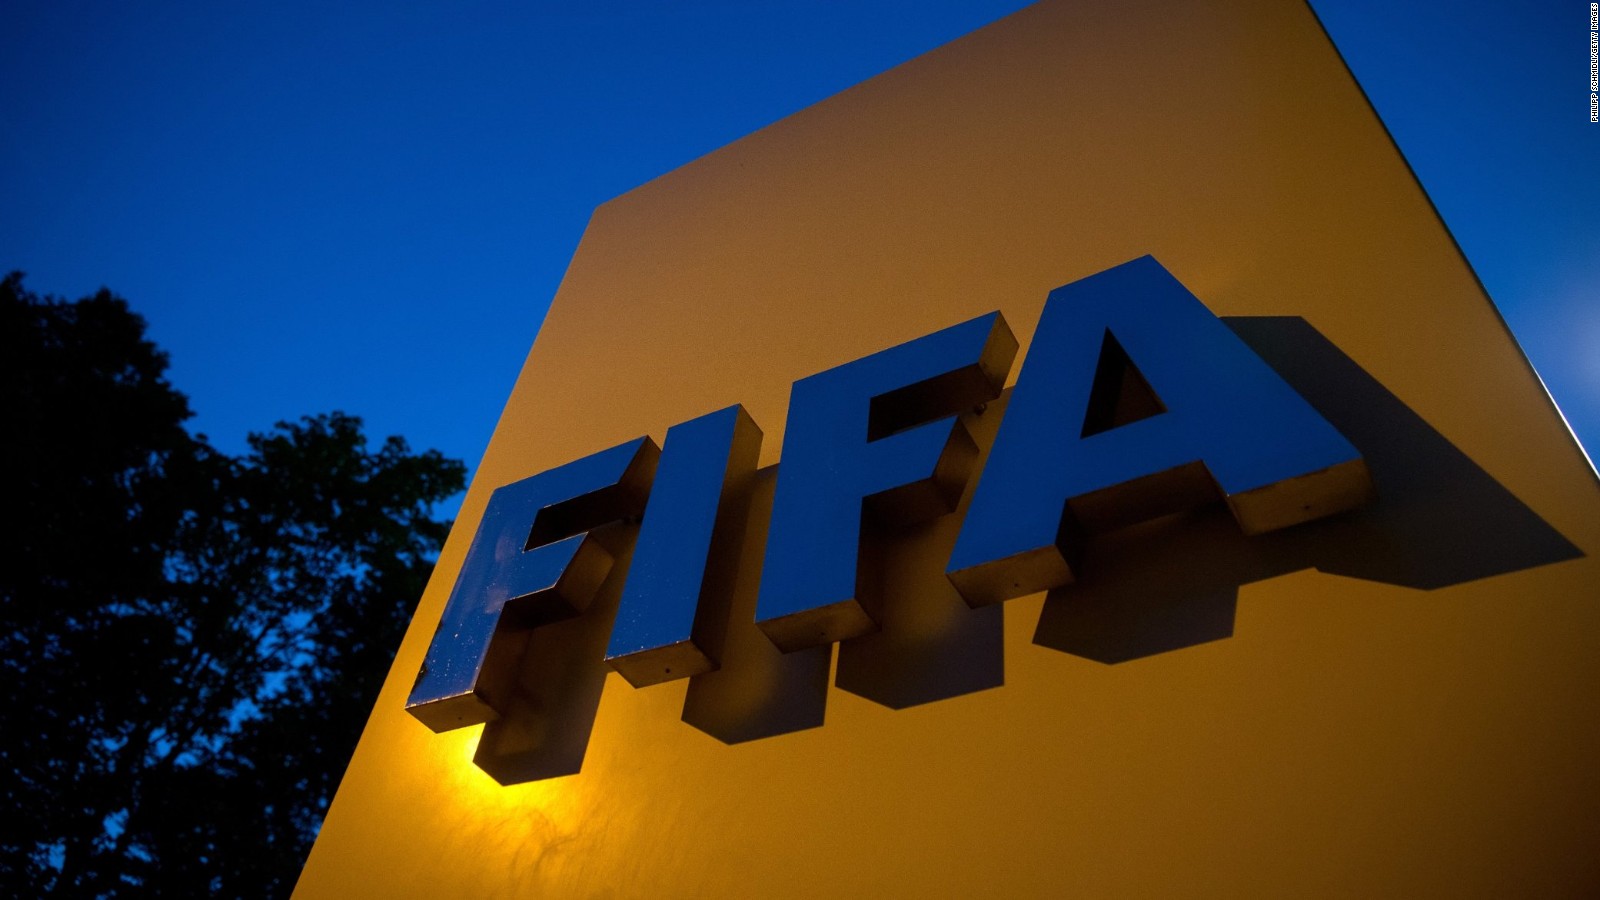 الفيفا تنشر تقرير حول اتهامات الفساد في تنظيم قطر لكأس العالم